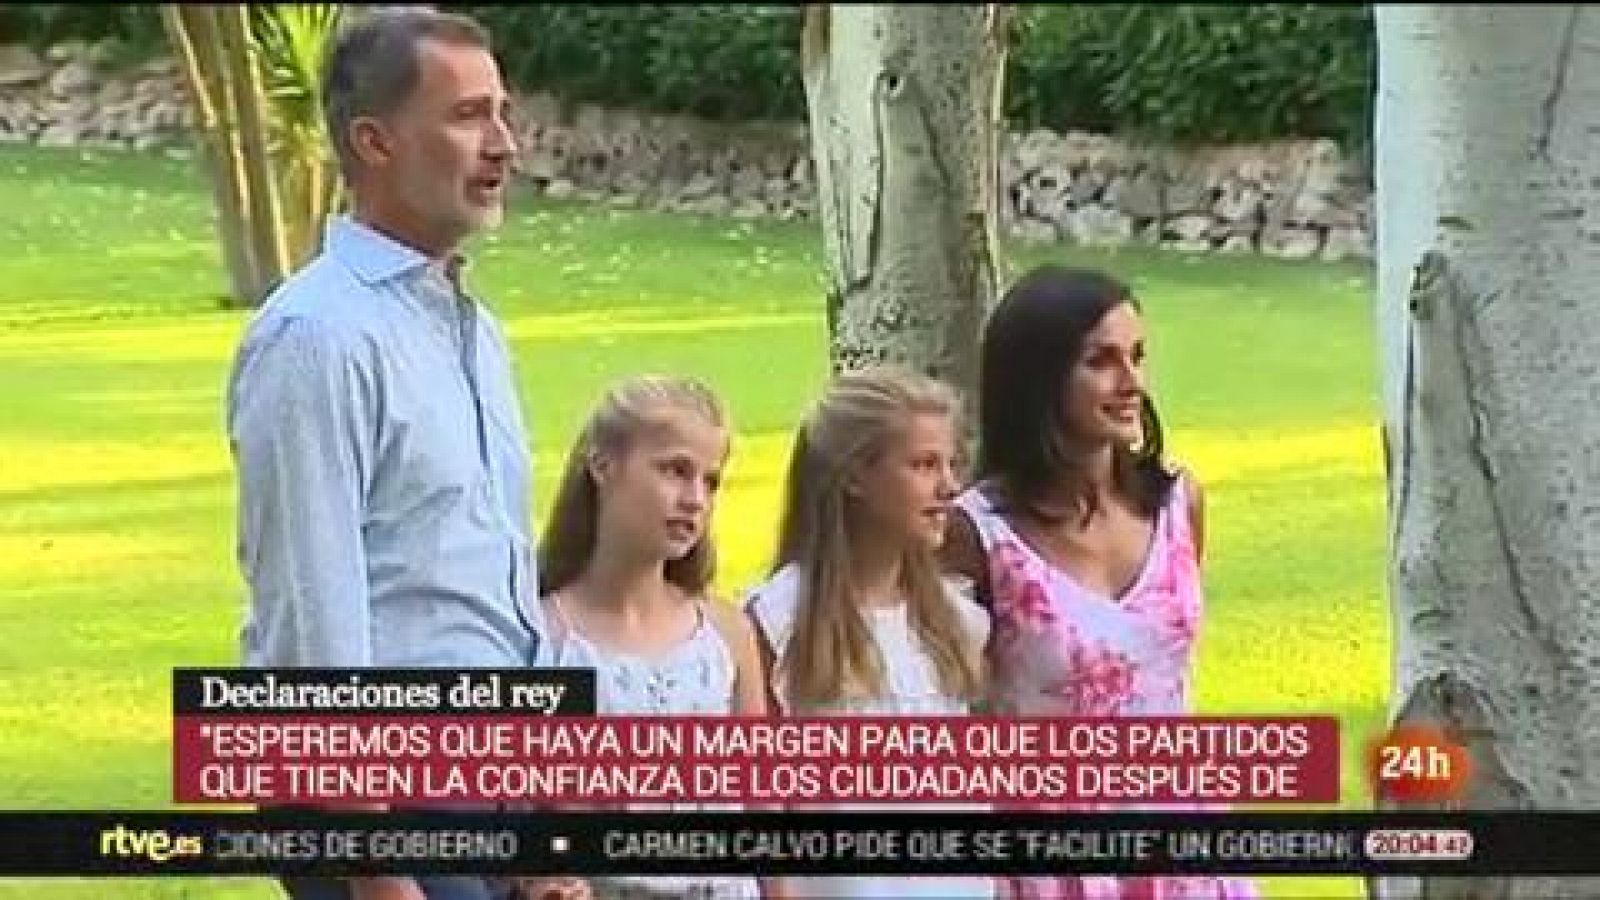 Telediario 1: Felipe VI: "Lo mejor es encontrar una solución antes de ir a elecciones" | RTVE Play